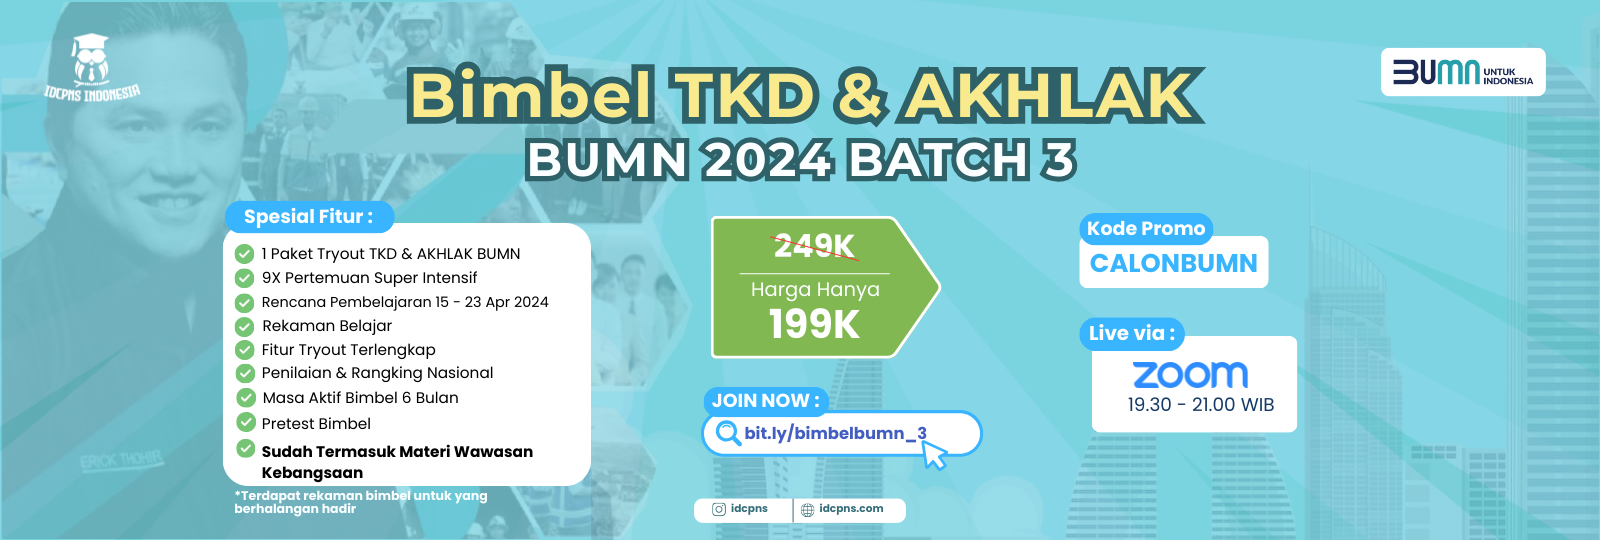 Bimbel TKD & AKHLAK BUMN 2024 Batch 4